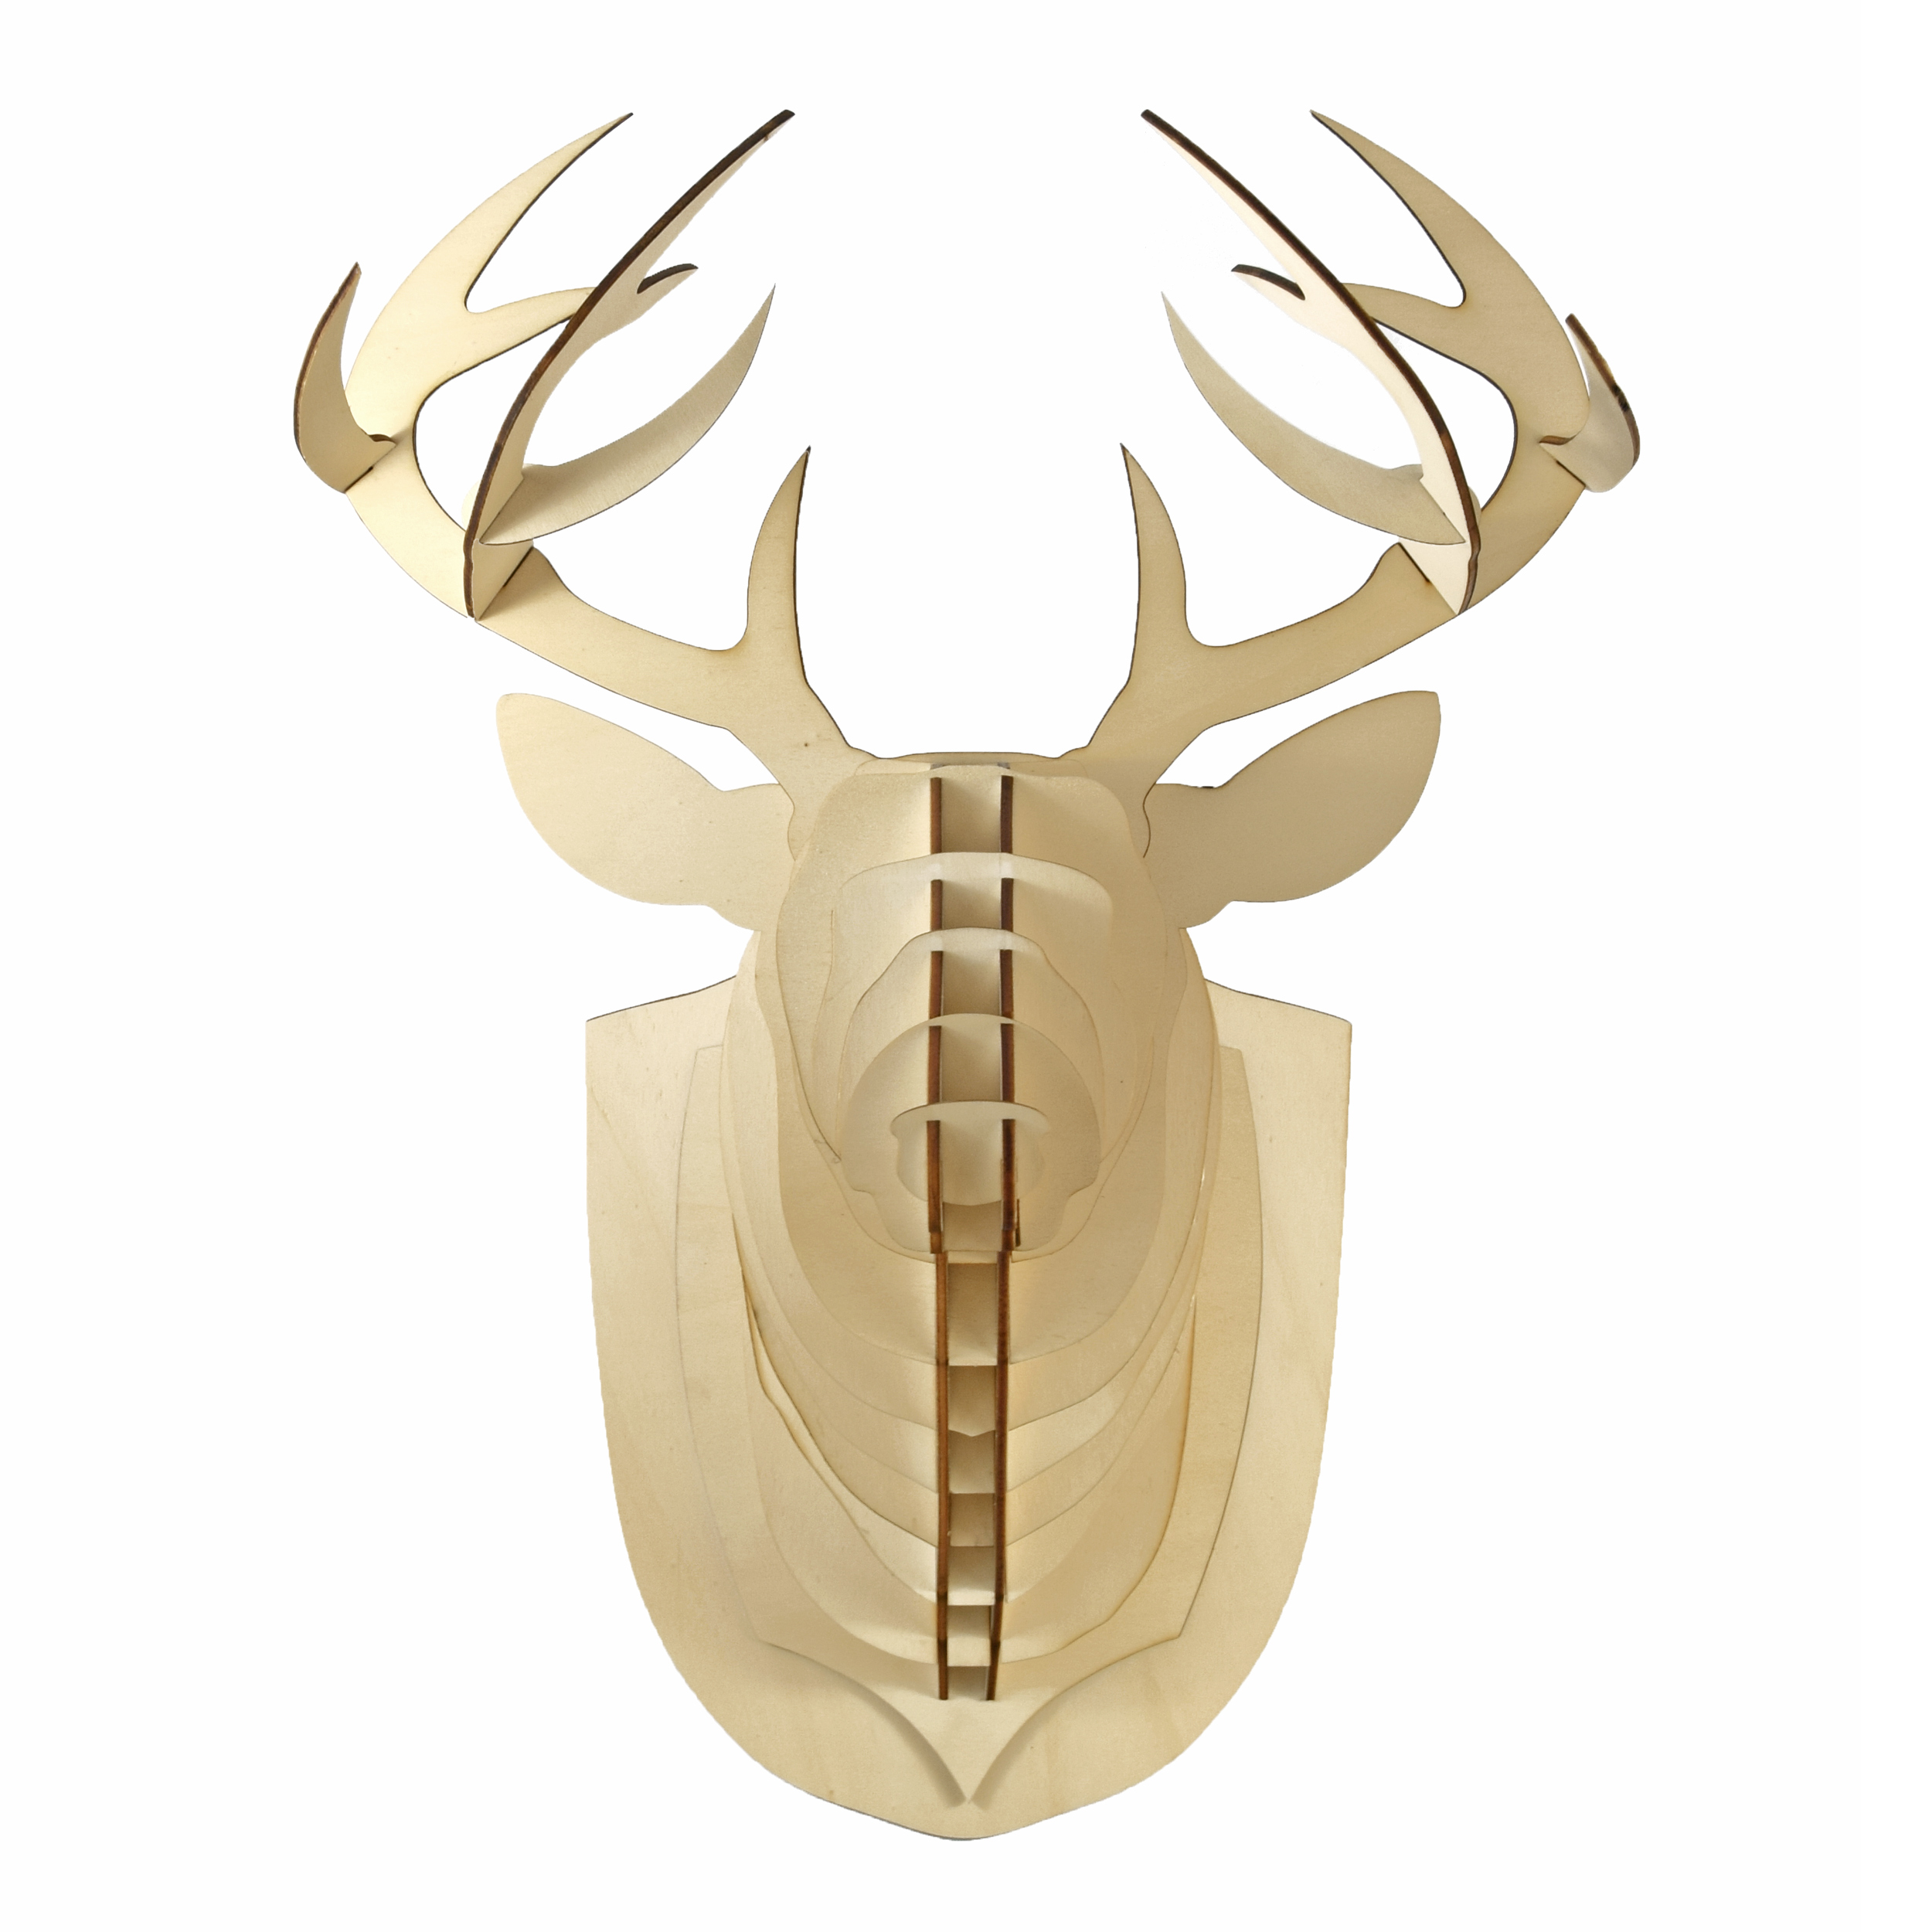 Deer head wooden trophy